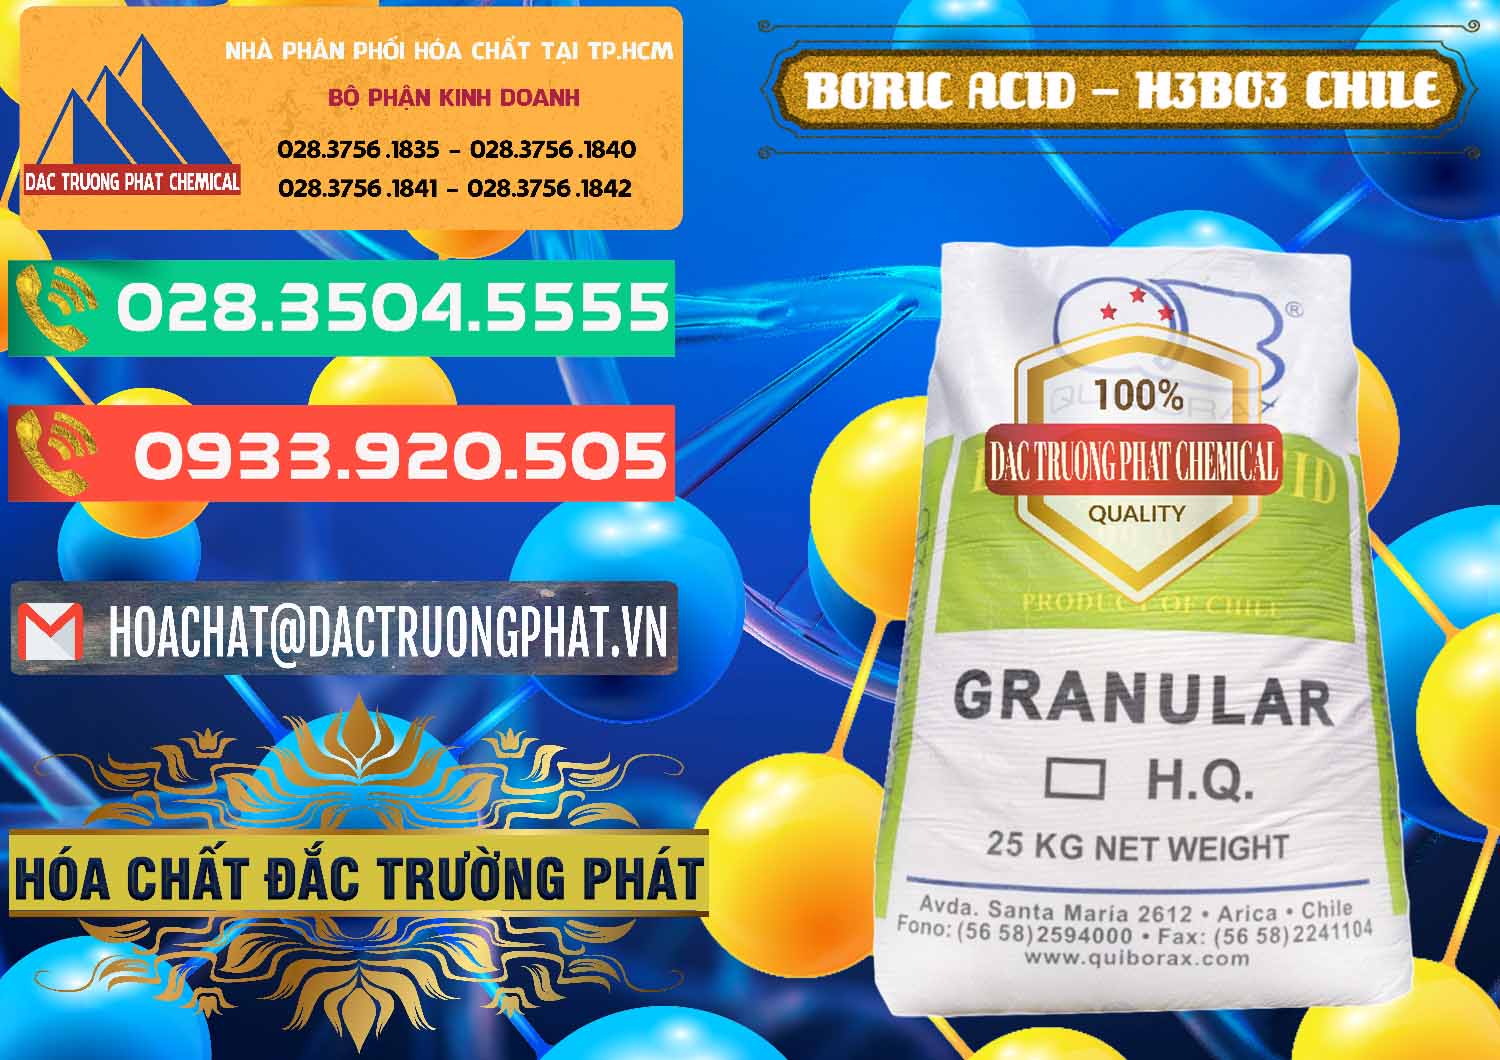 Nơi phân phối - bán Acid Boric – Axit Boric H3BO3 99% Quiborax Chile - 0281 - Cty chuyên kinh doanh _ phân phối hóa chất tại TP.HCM - congtyhoachat.com.vn